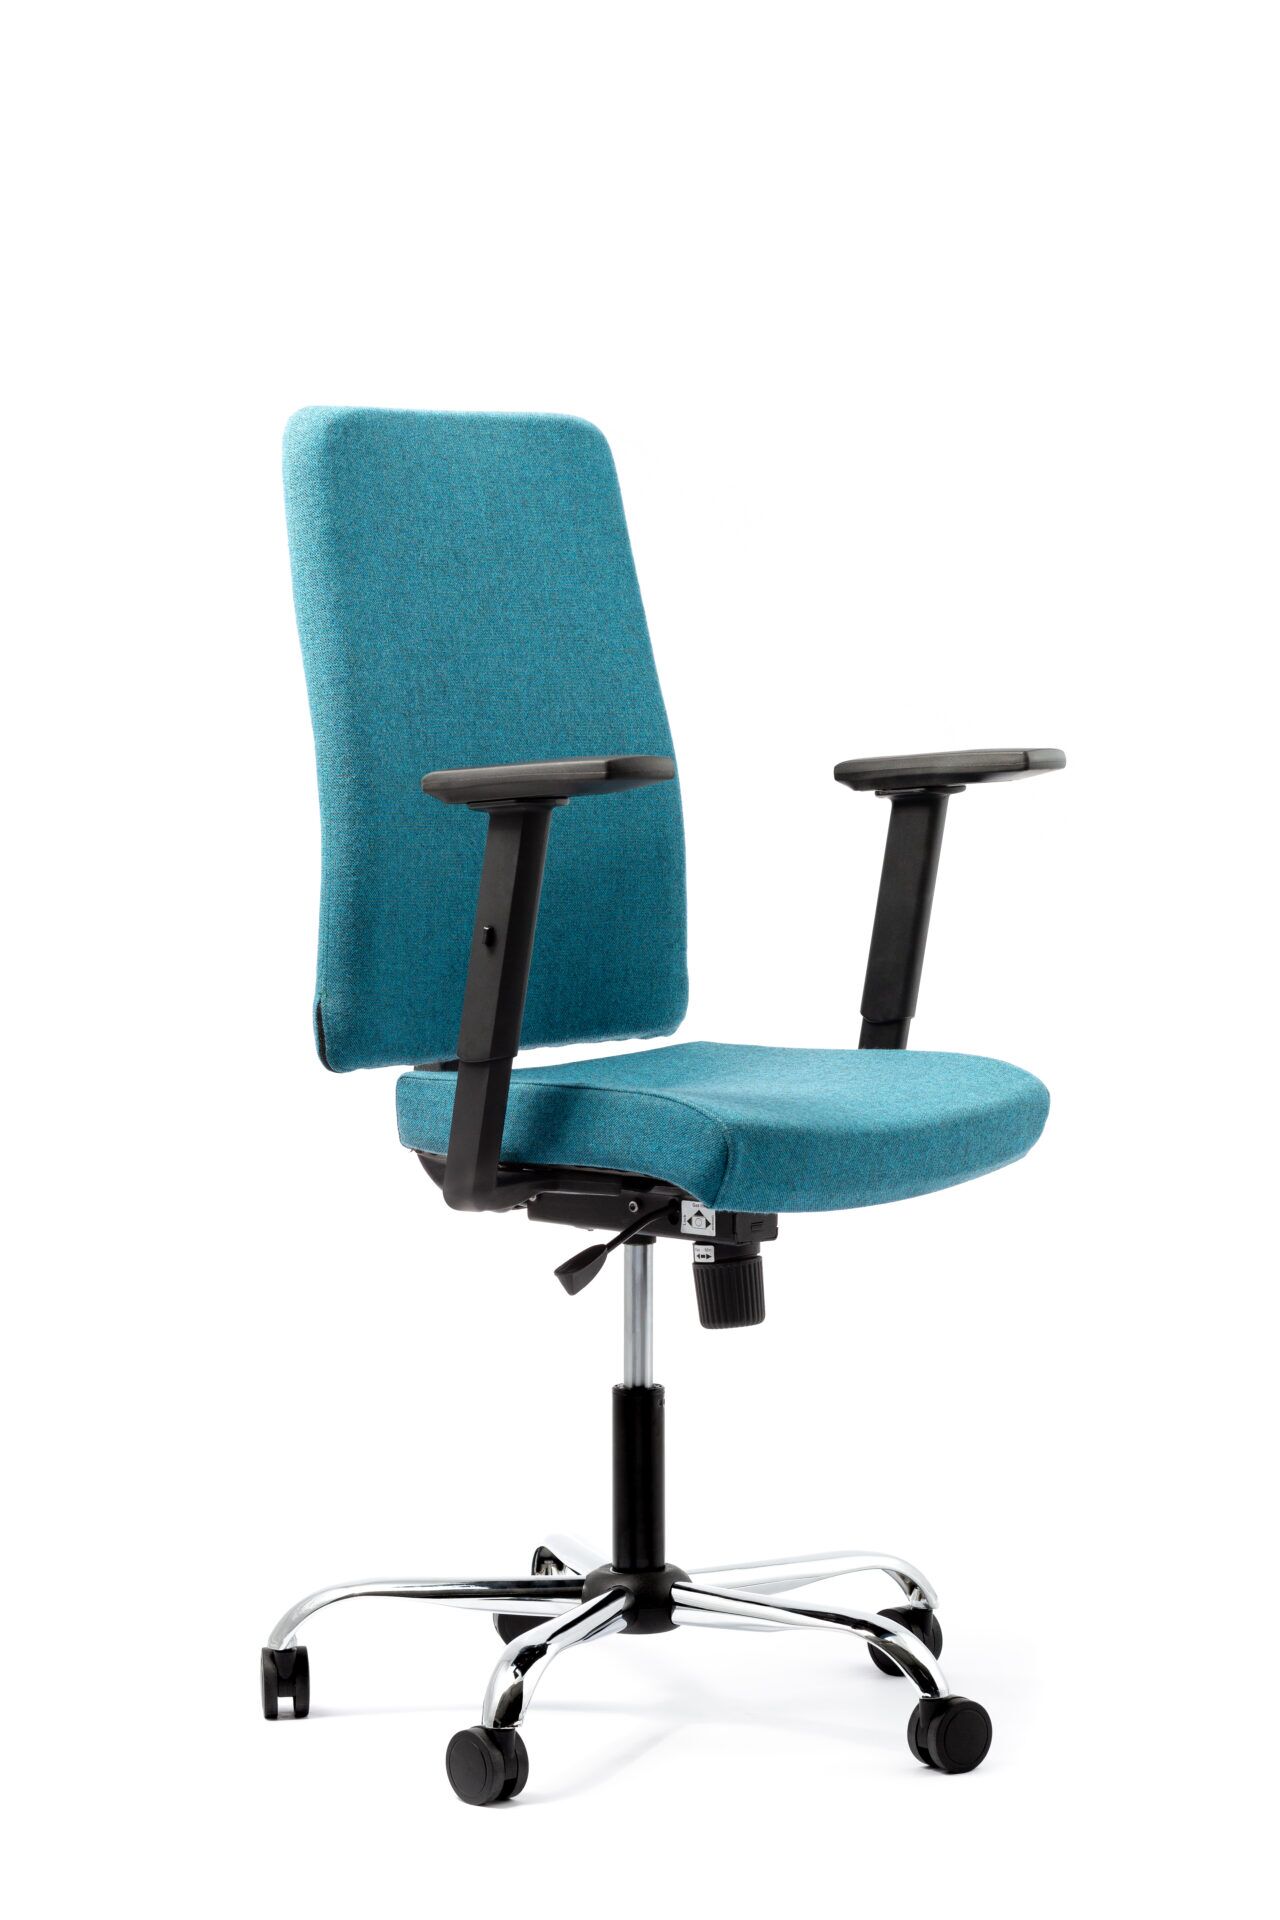 Niebieski fotel biurowy - widoczny po skosie od przodu zdjęcie 7